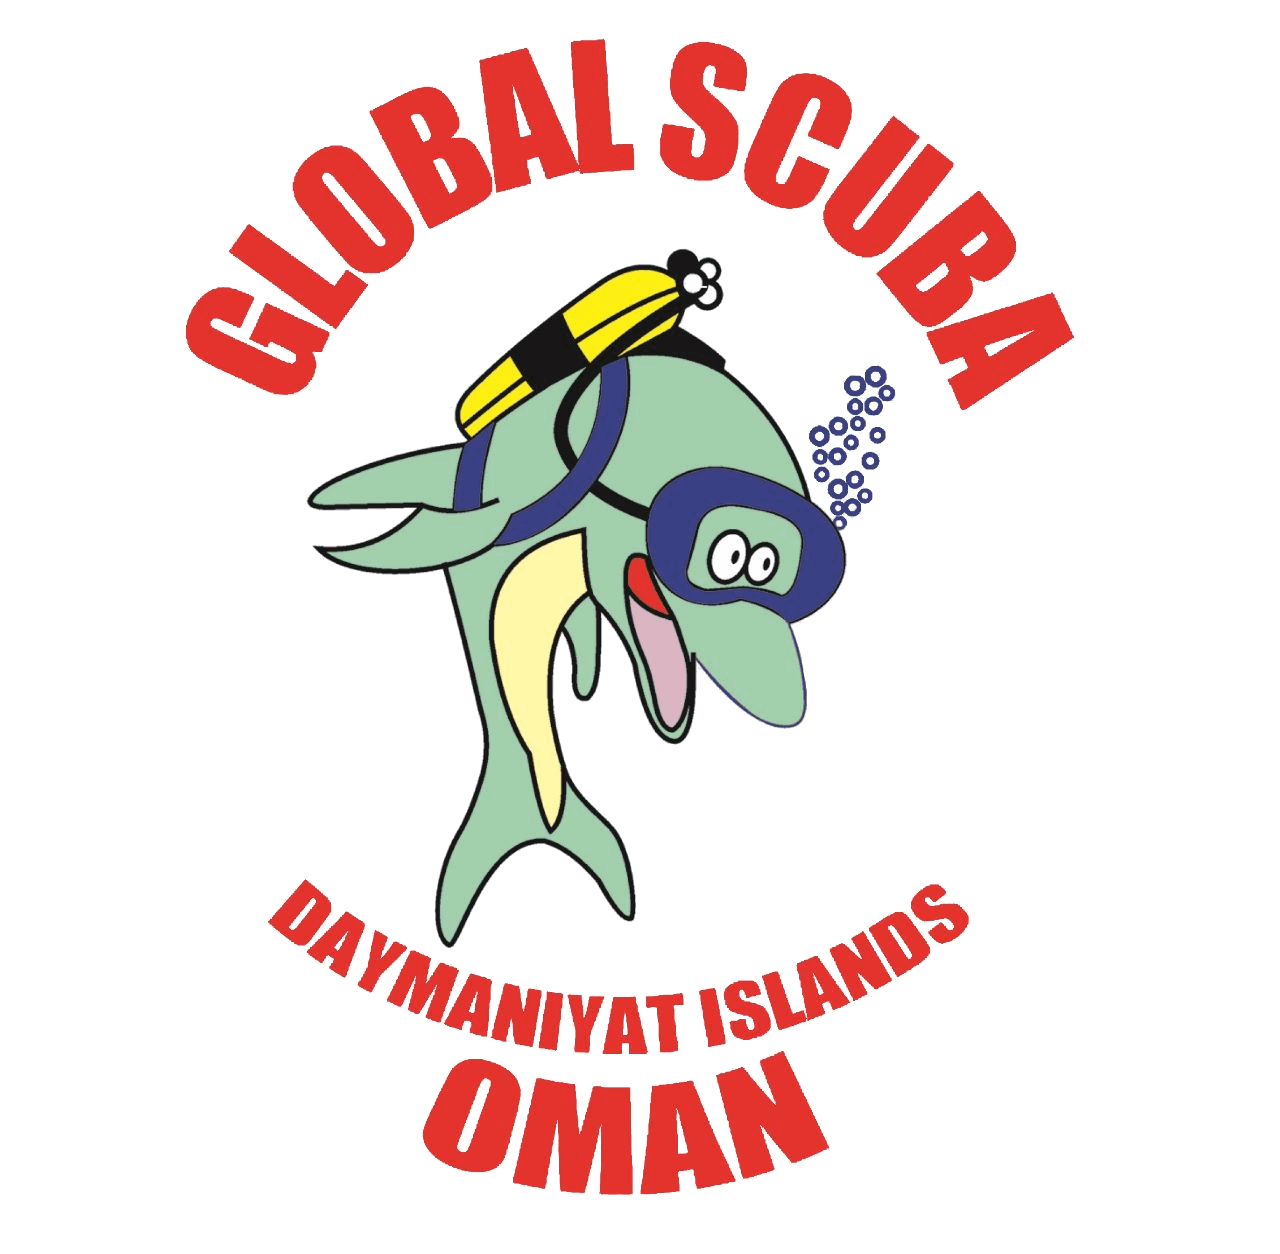 Global Scuba